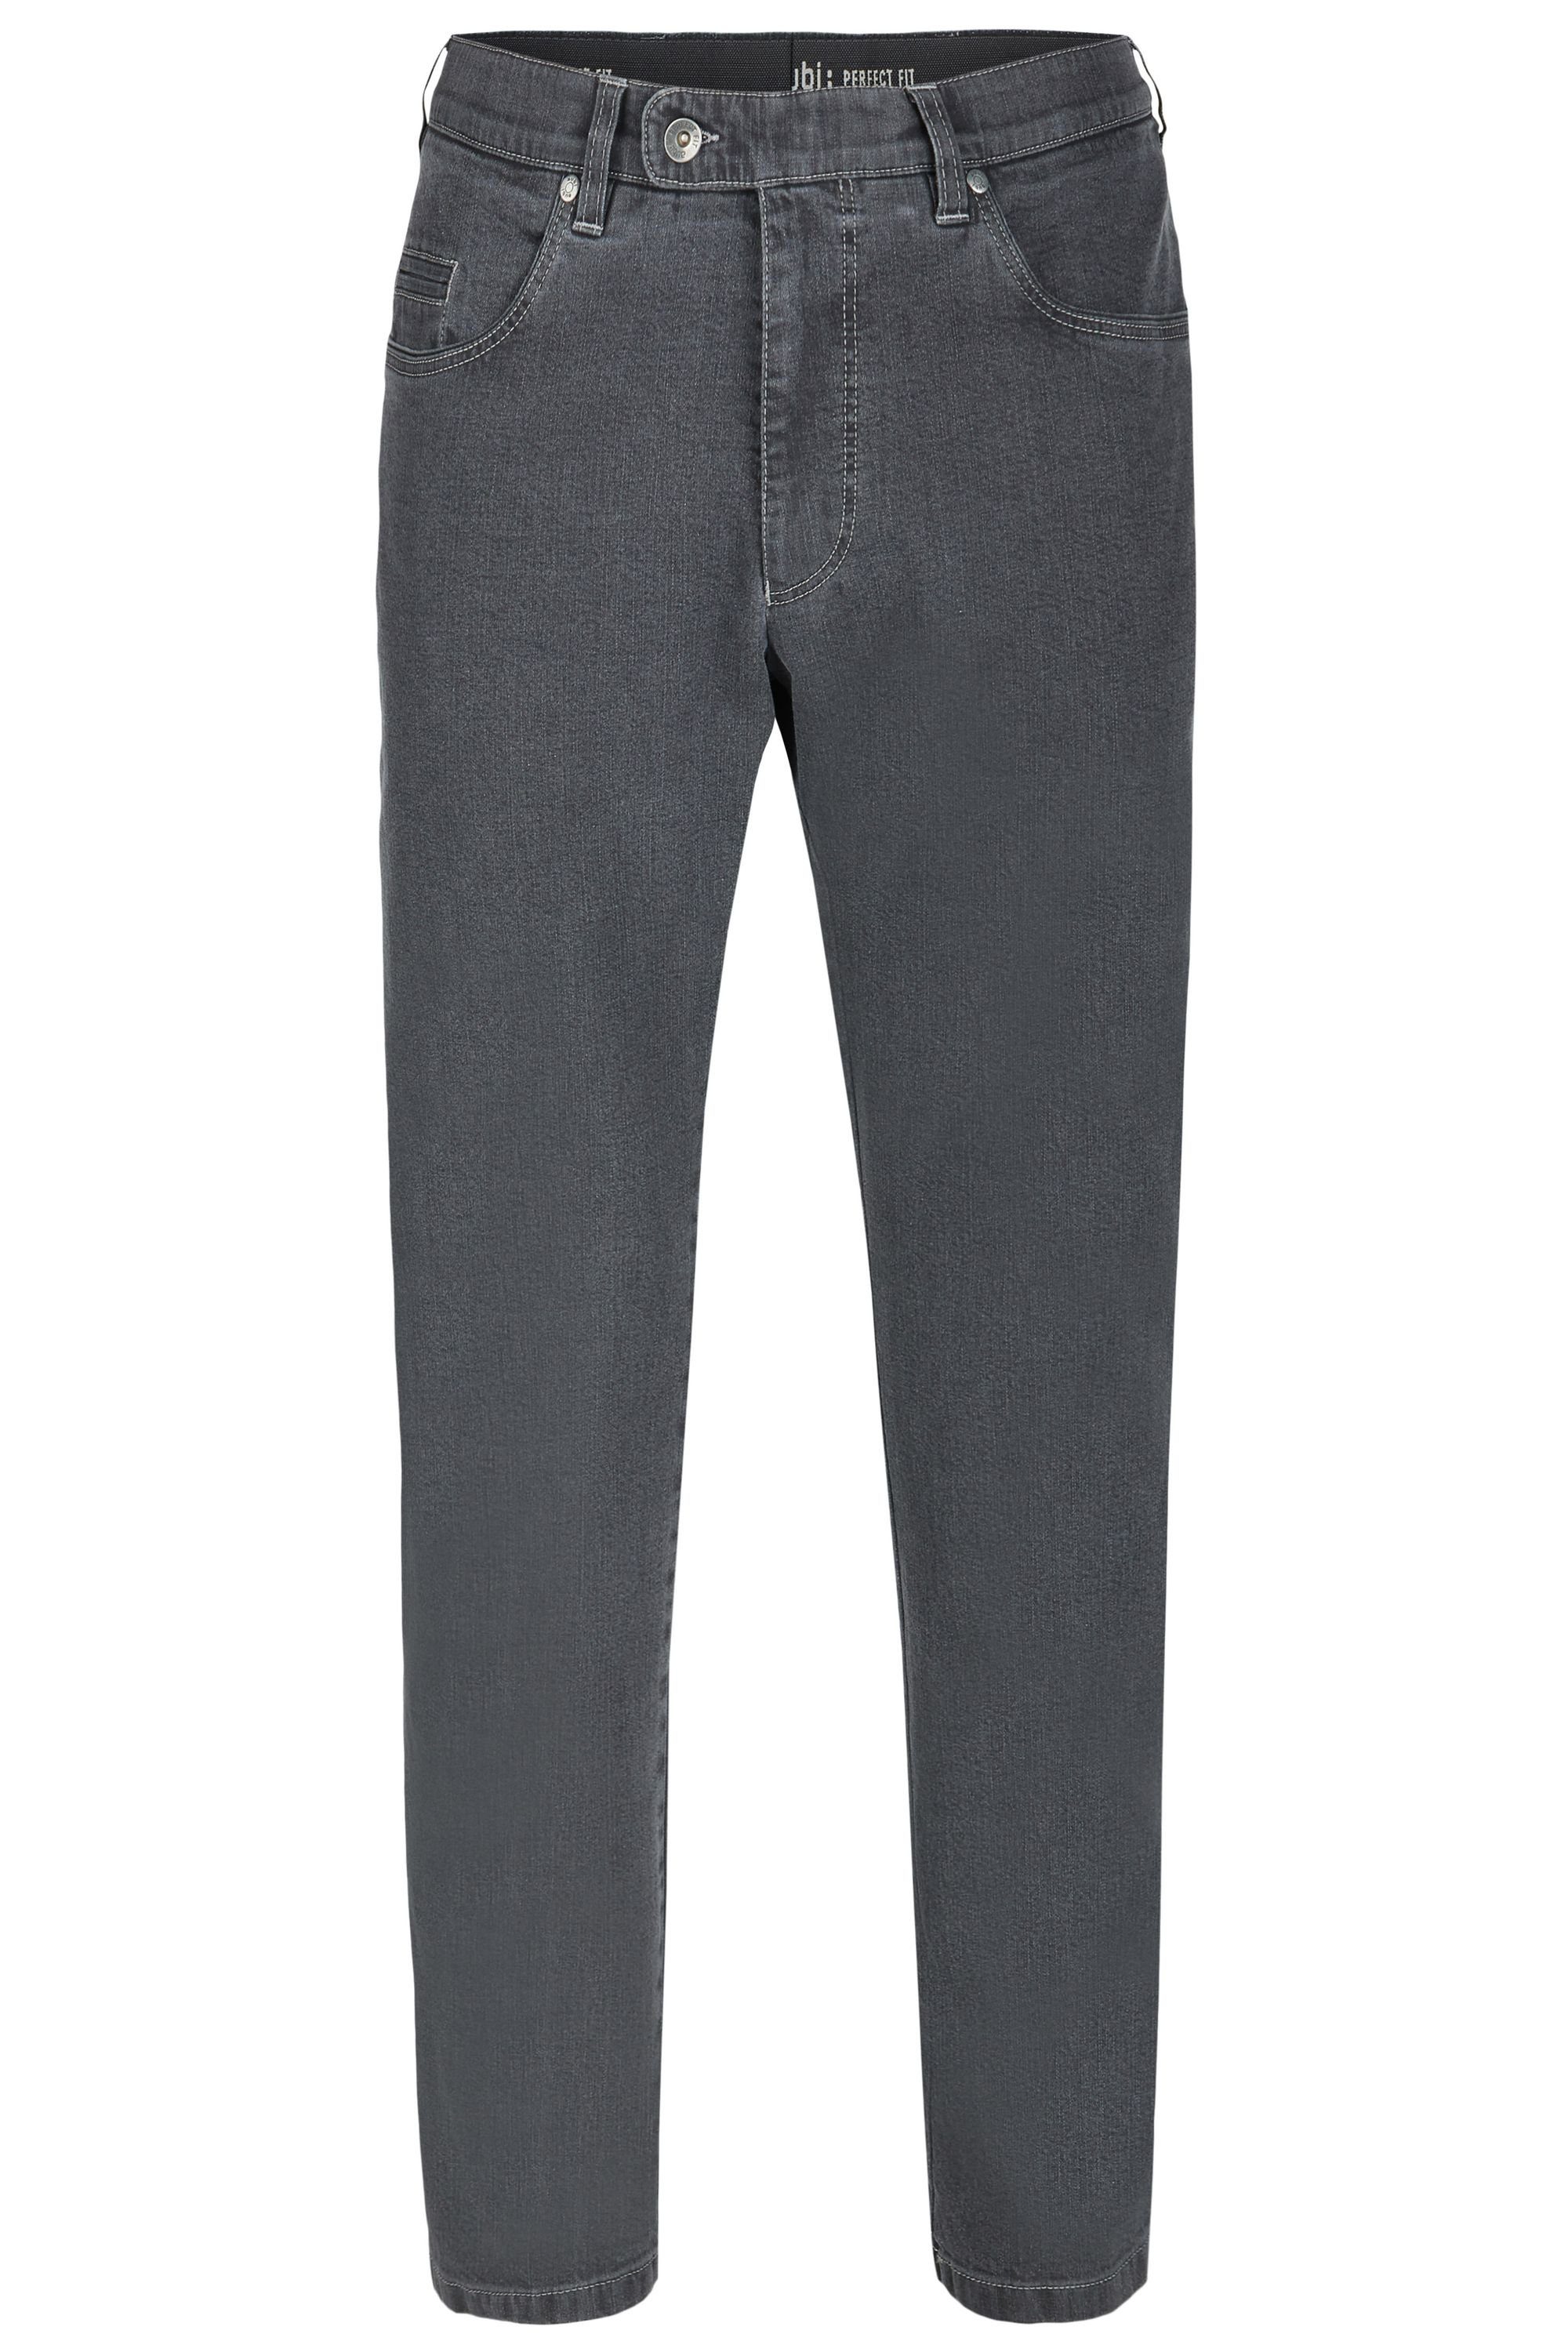 Shop-, Laden-, Händlerinformationen aubi: Bequeme Jeans aubi Perfect Jeans Hose (53) Fit grey 577 Modell Herren Stretch